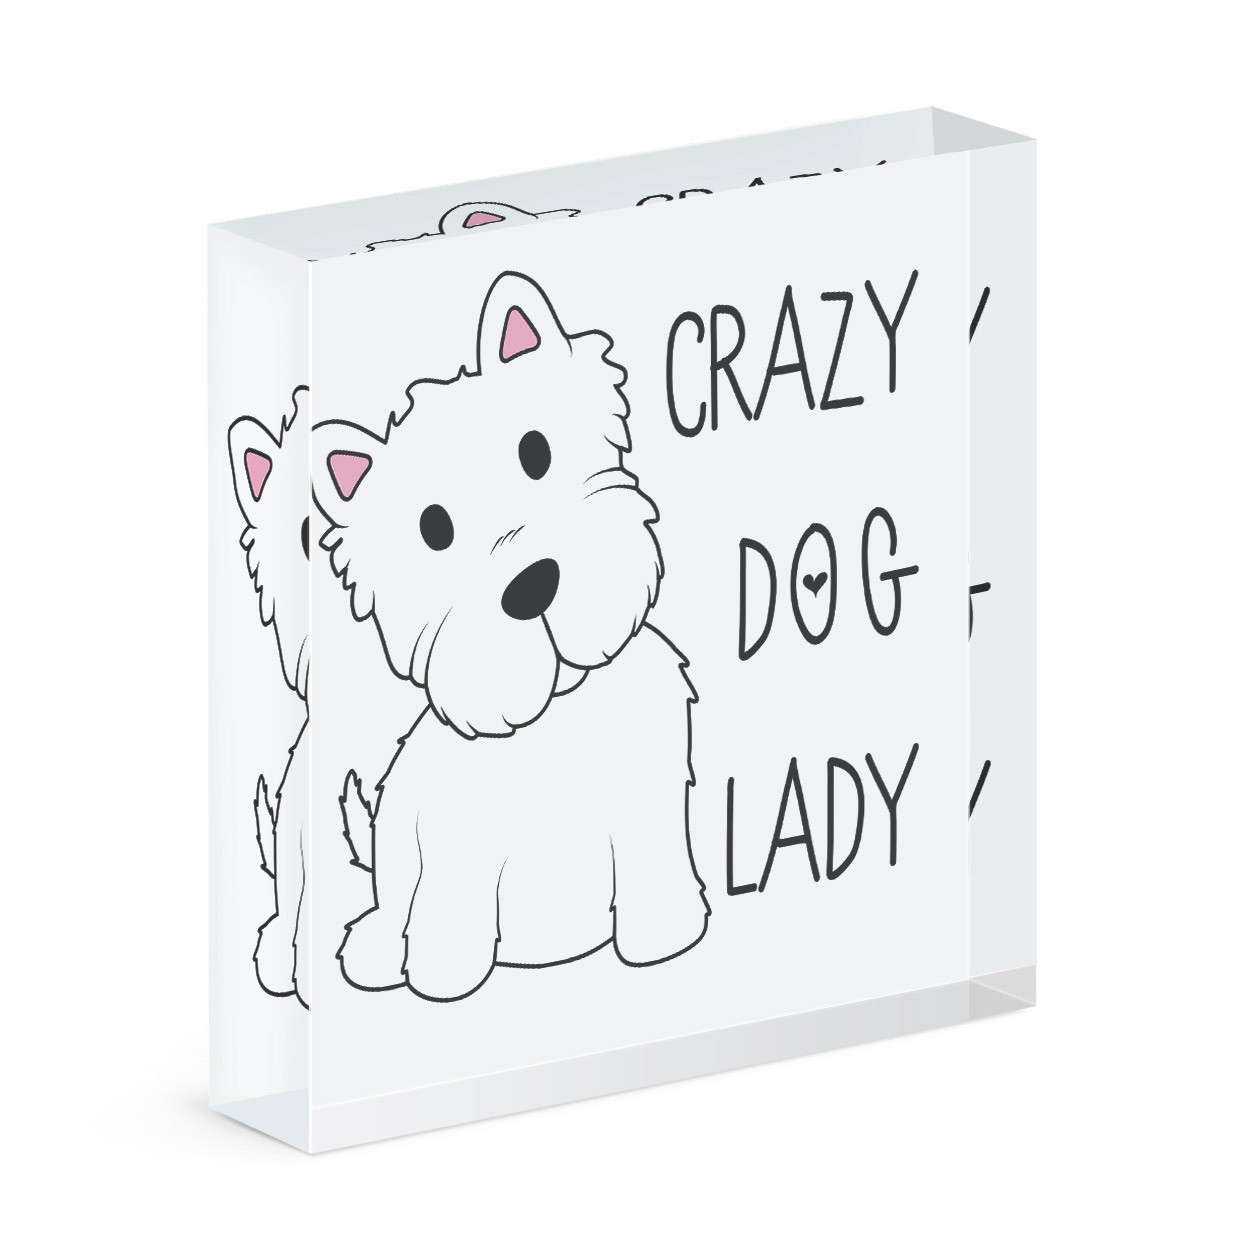 Crazy Dog Lady Acrylic Block